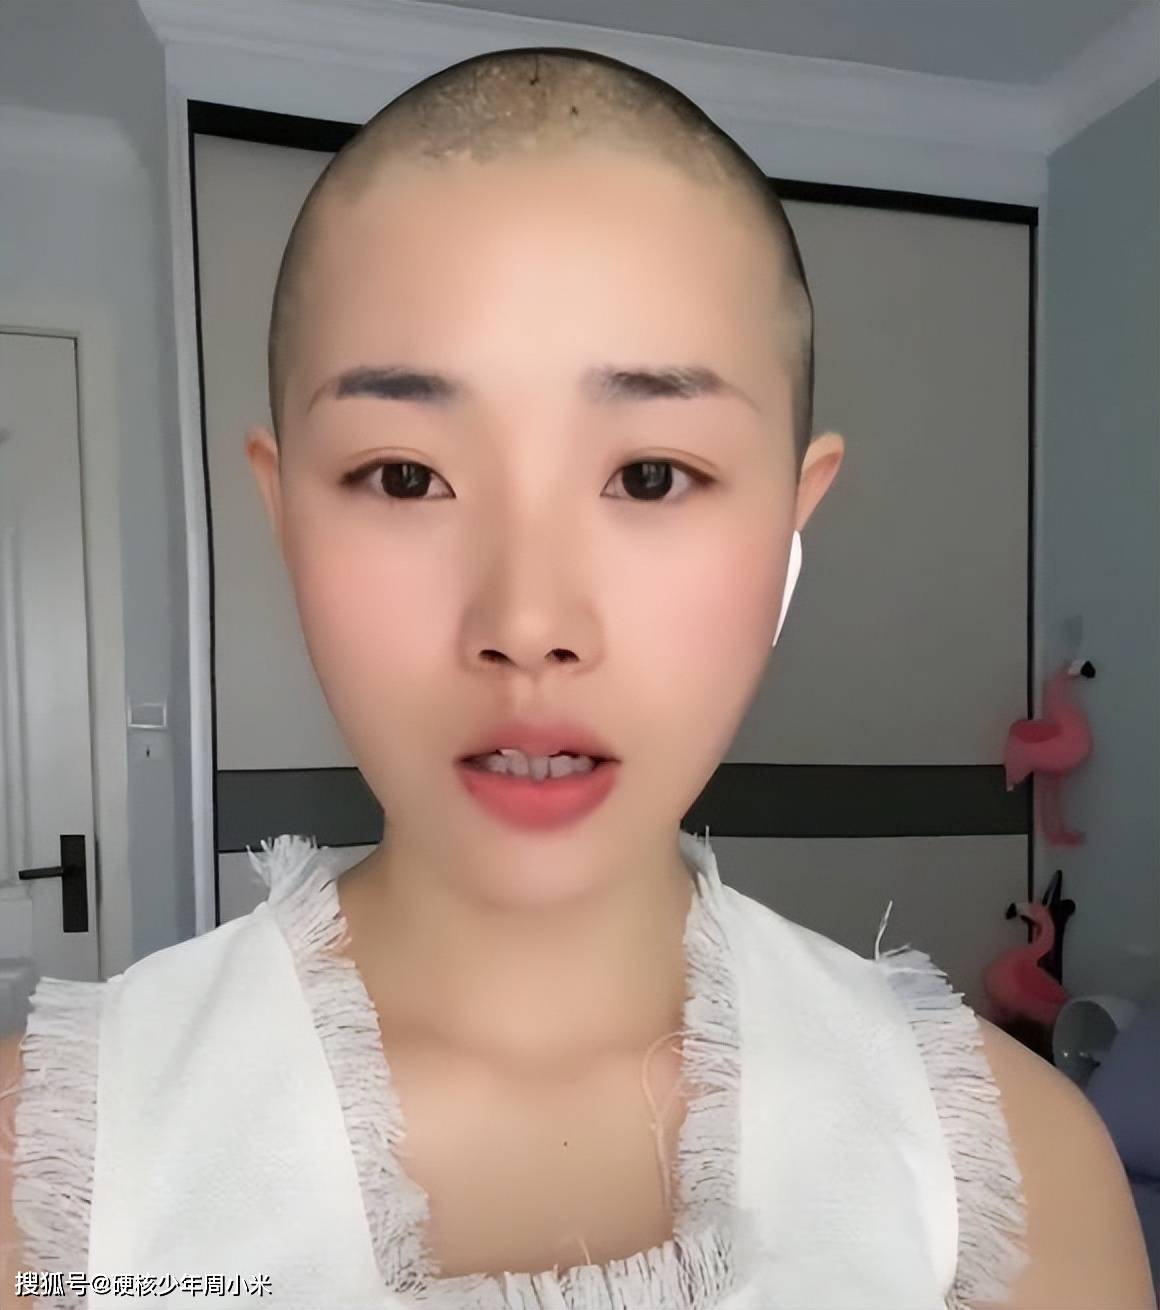 上海一女子和男友分手后剃光头:男朋友喜欢长发女孩